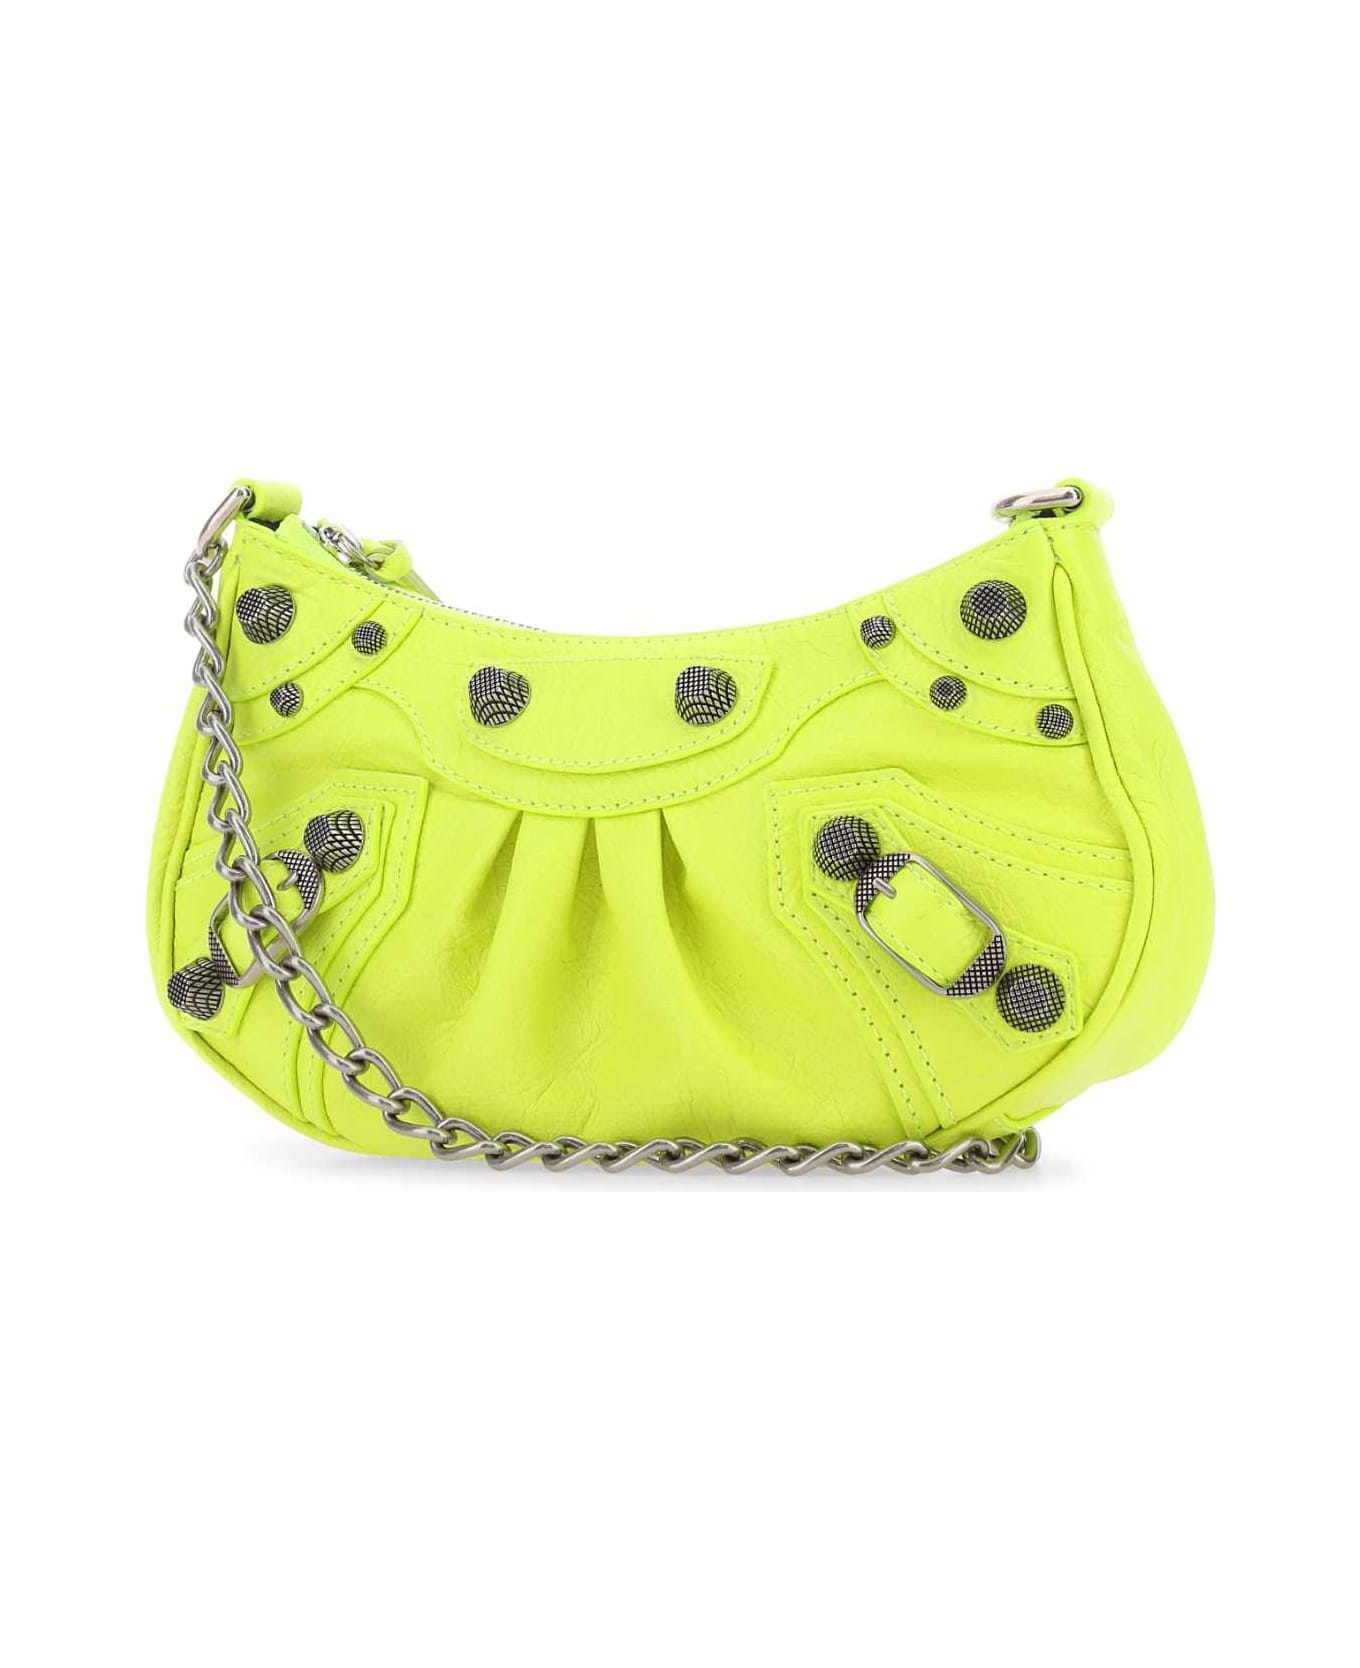 Balenciaga Fluo Yellow Leather Le Cagole Mini Handbag - FLUO YELLOW